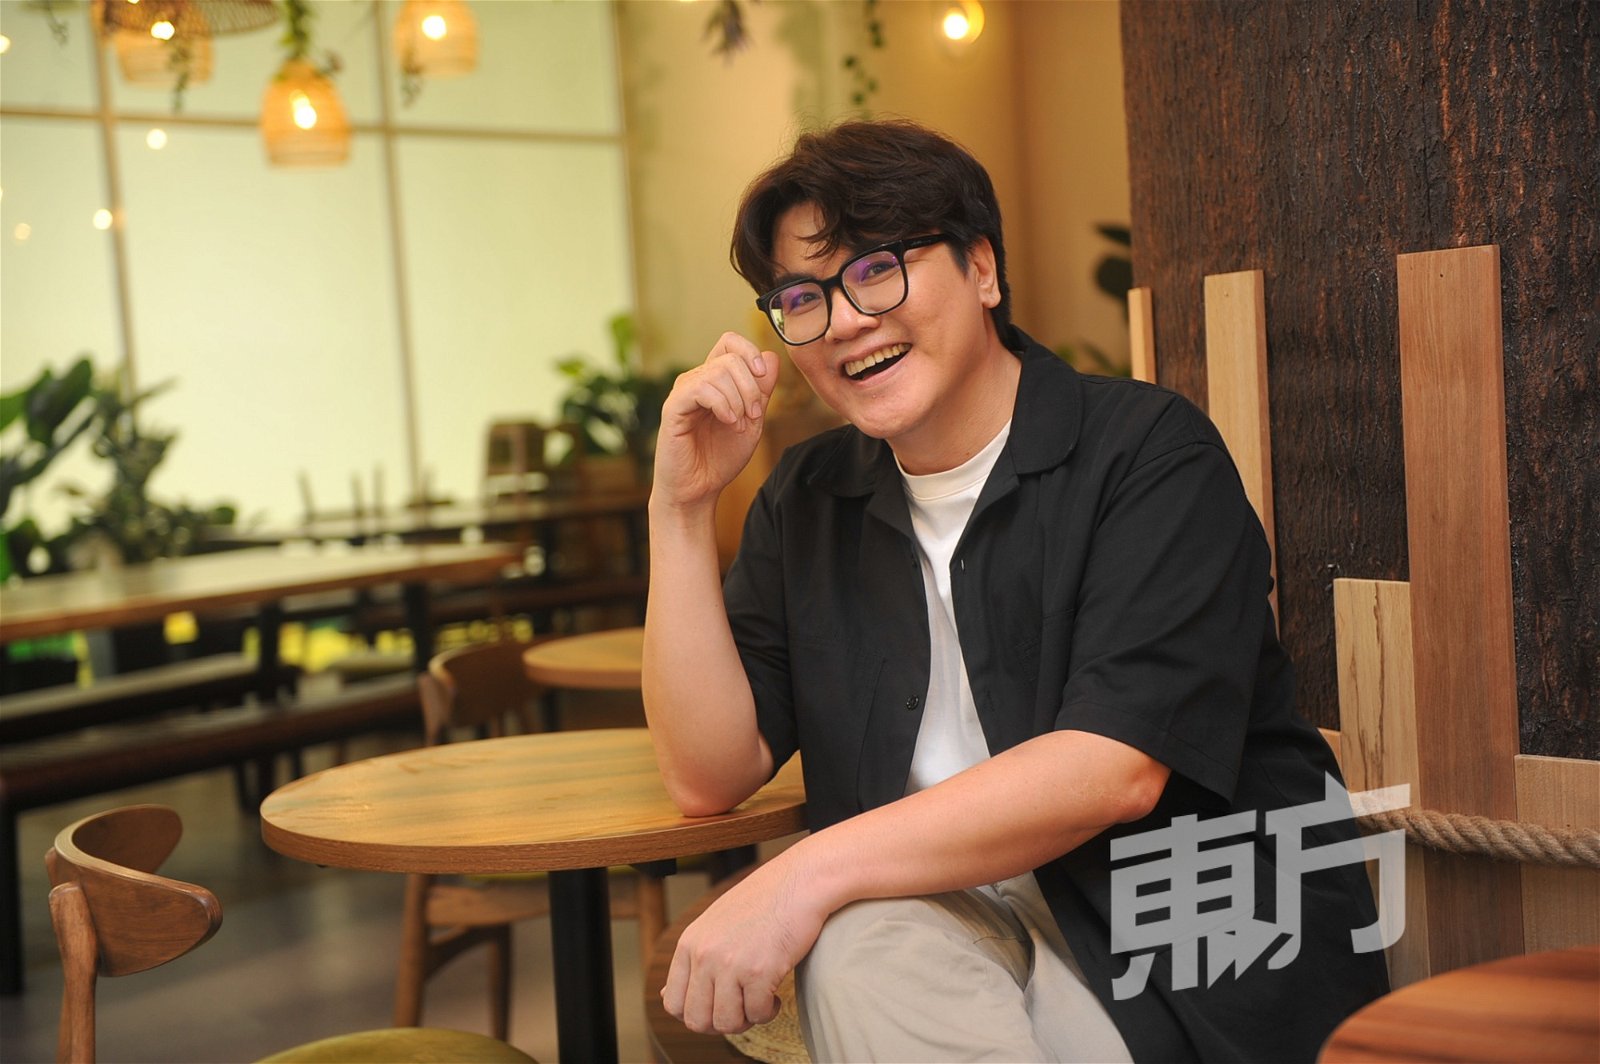 从事声音工作多年的杨理强尝试餐饮服务业，让他发掘自己更多新的可能。